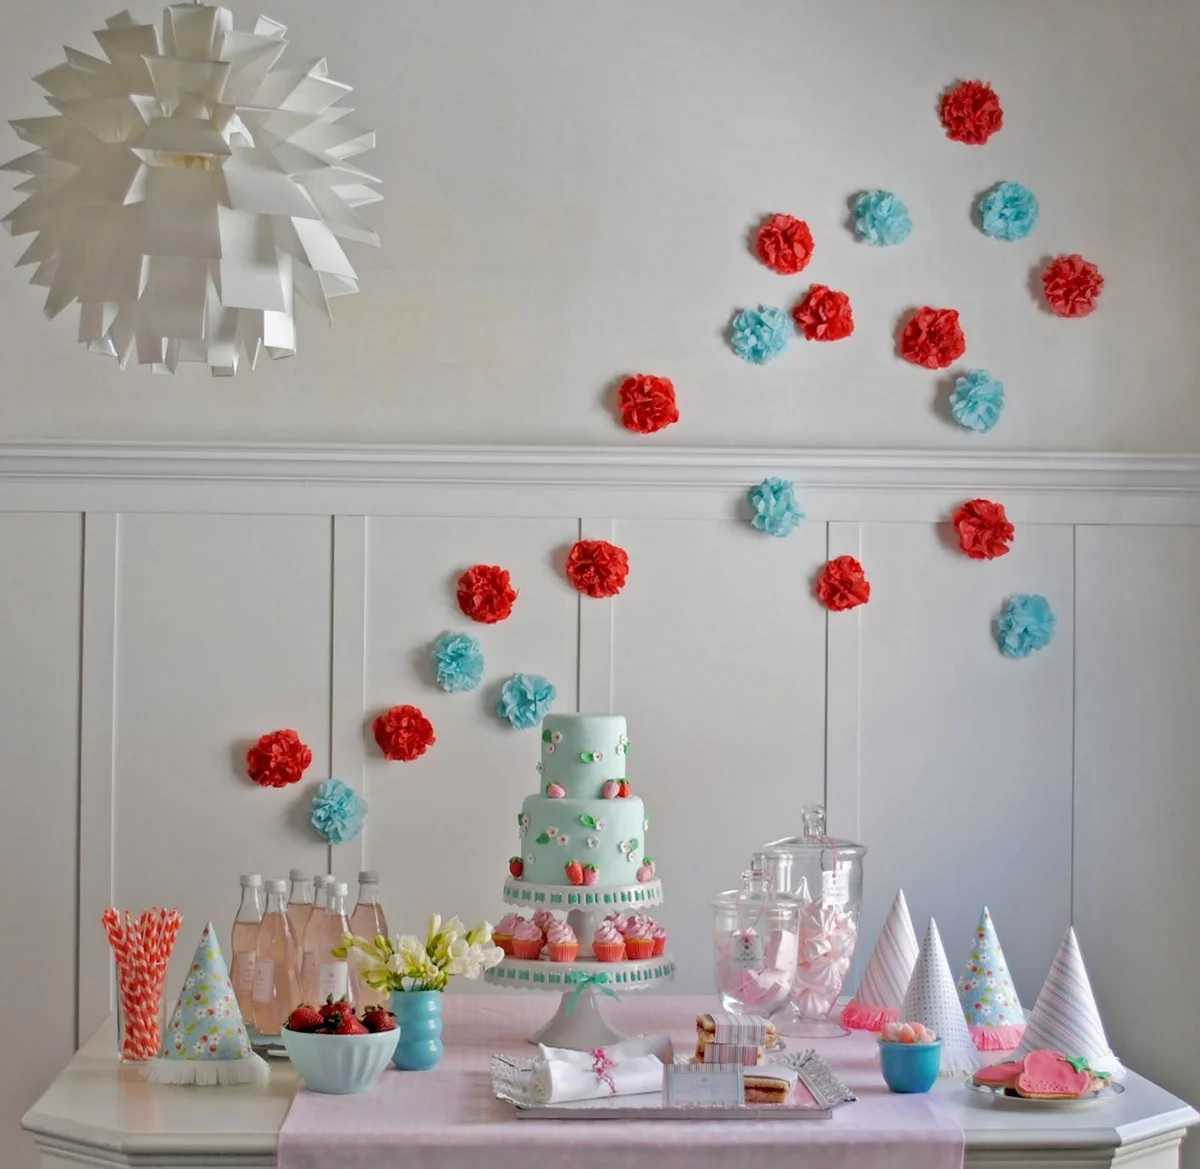 Как украсить комнату на день рождения ребенка своими руками? идеи оформления :: syl.ru